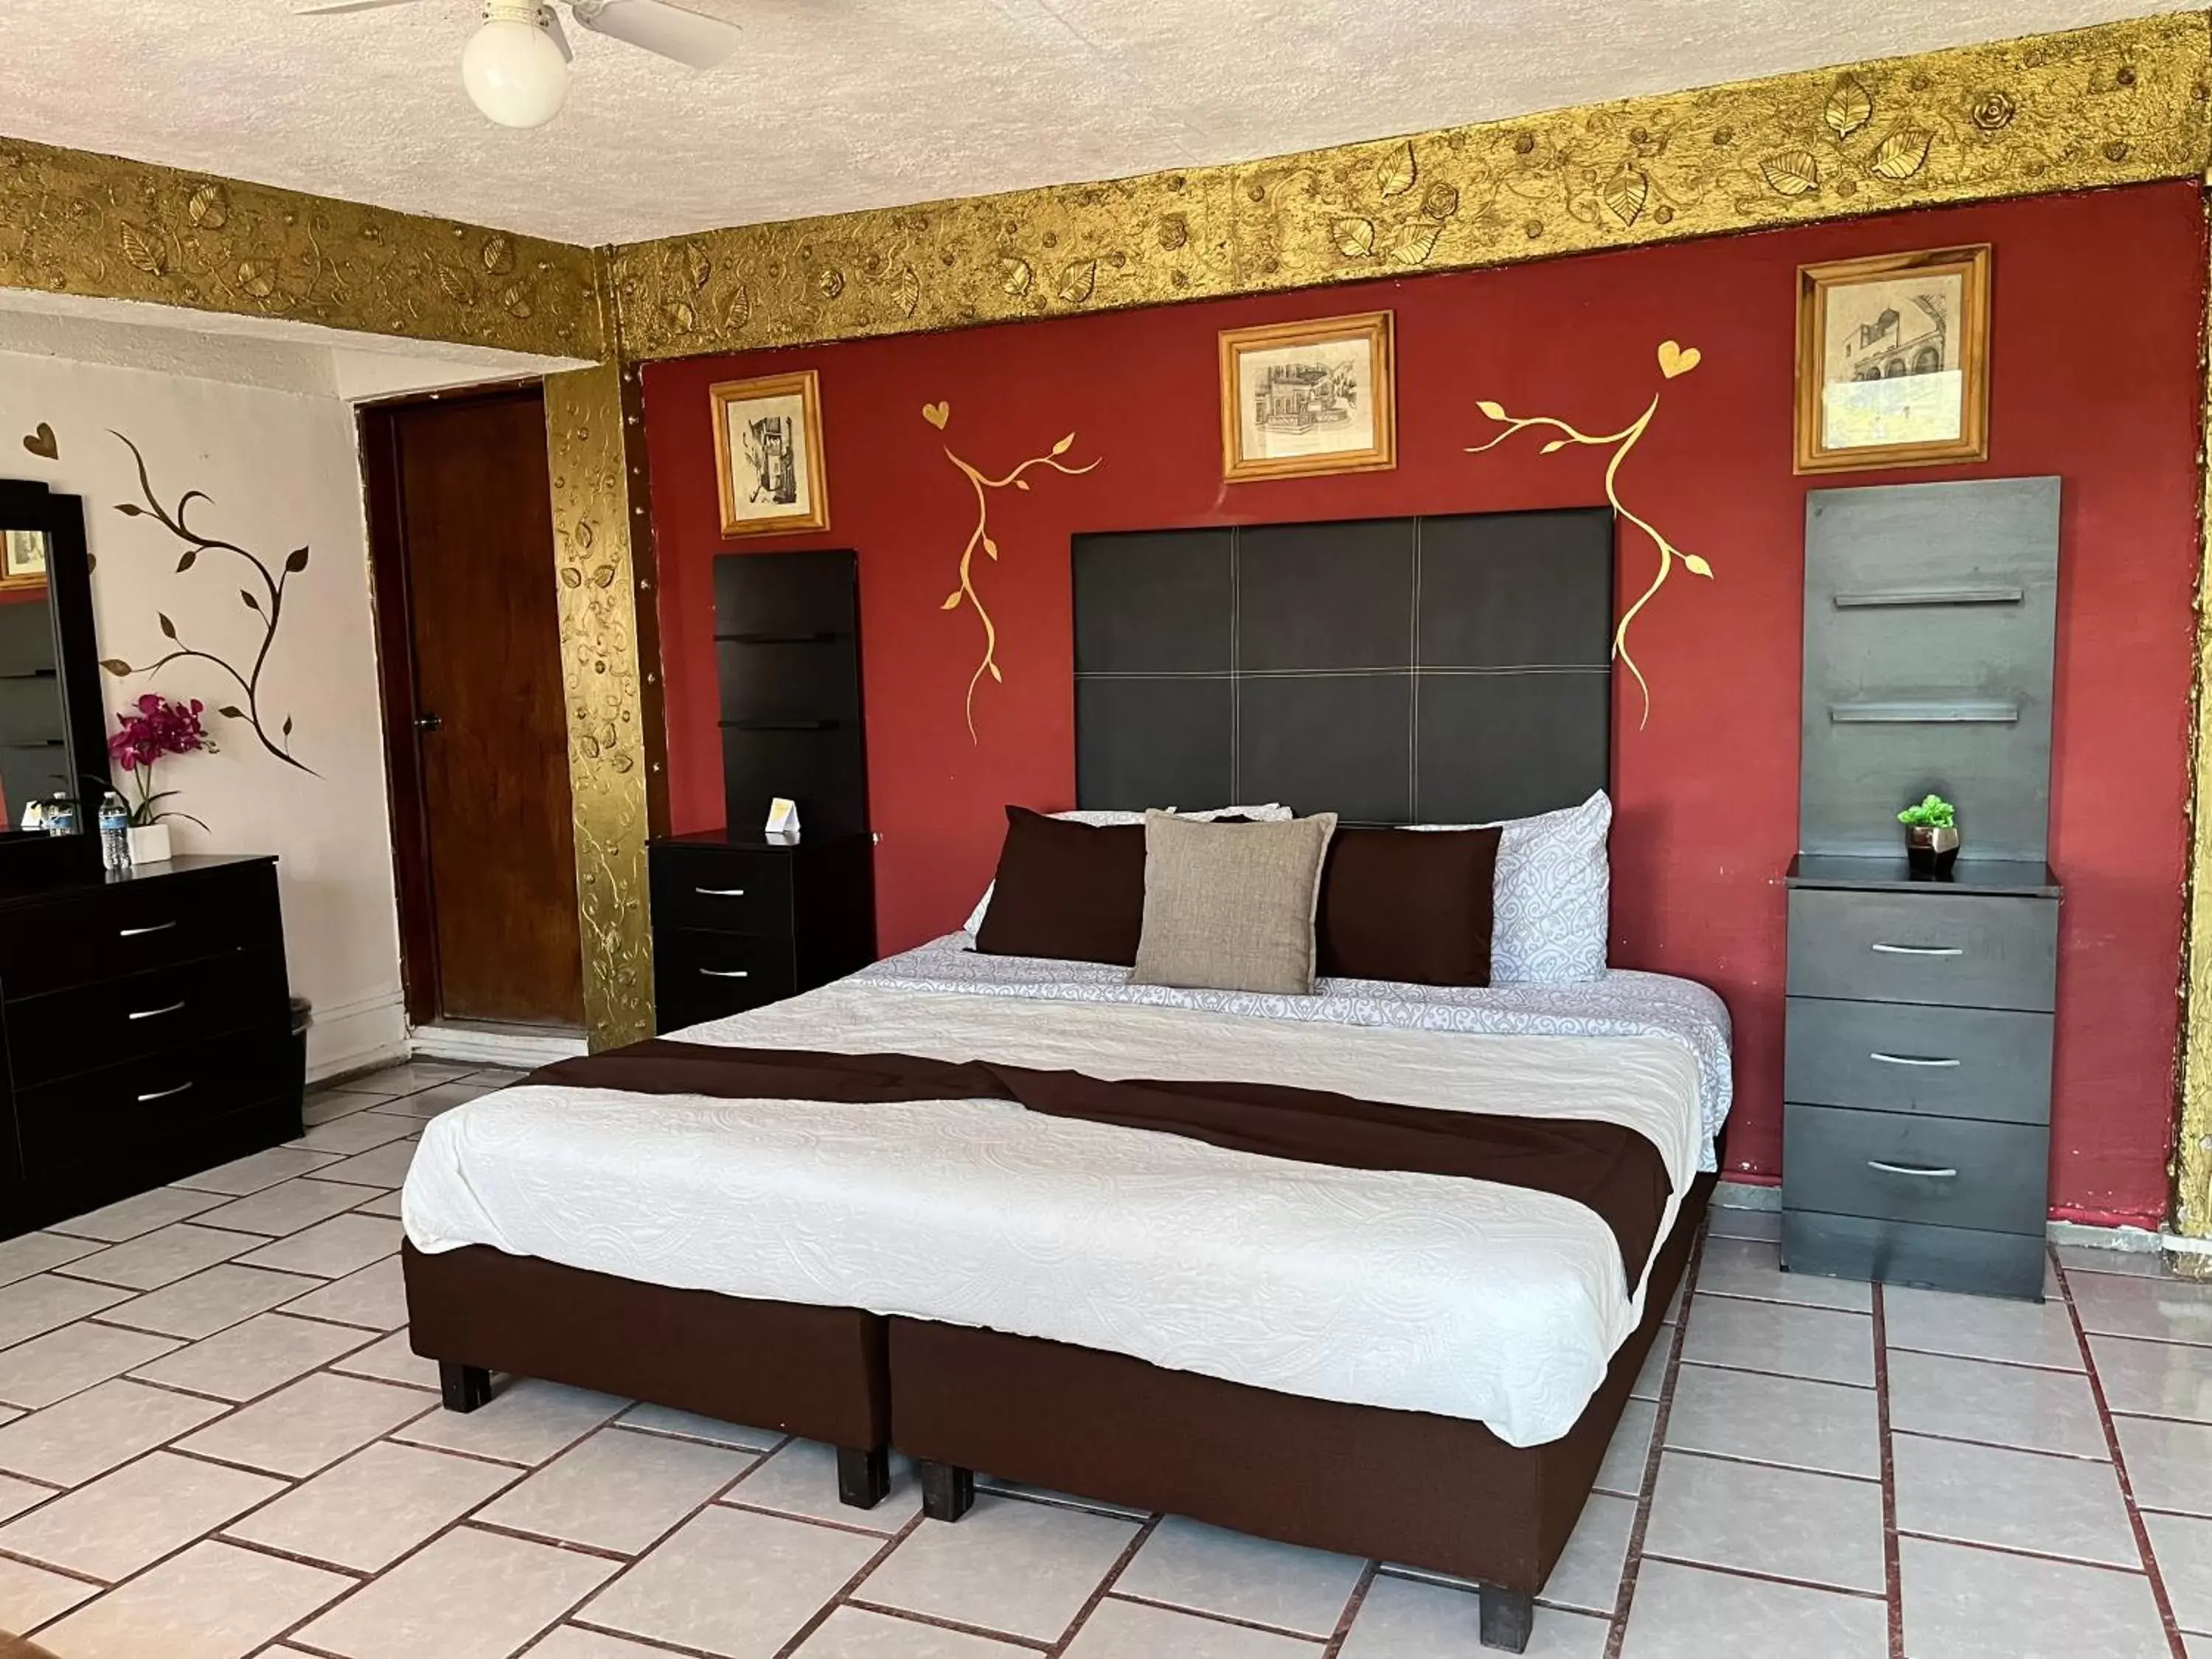 Bed in HOTEL CASONA DE LAS AVES